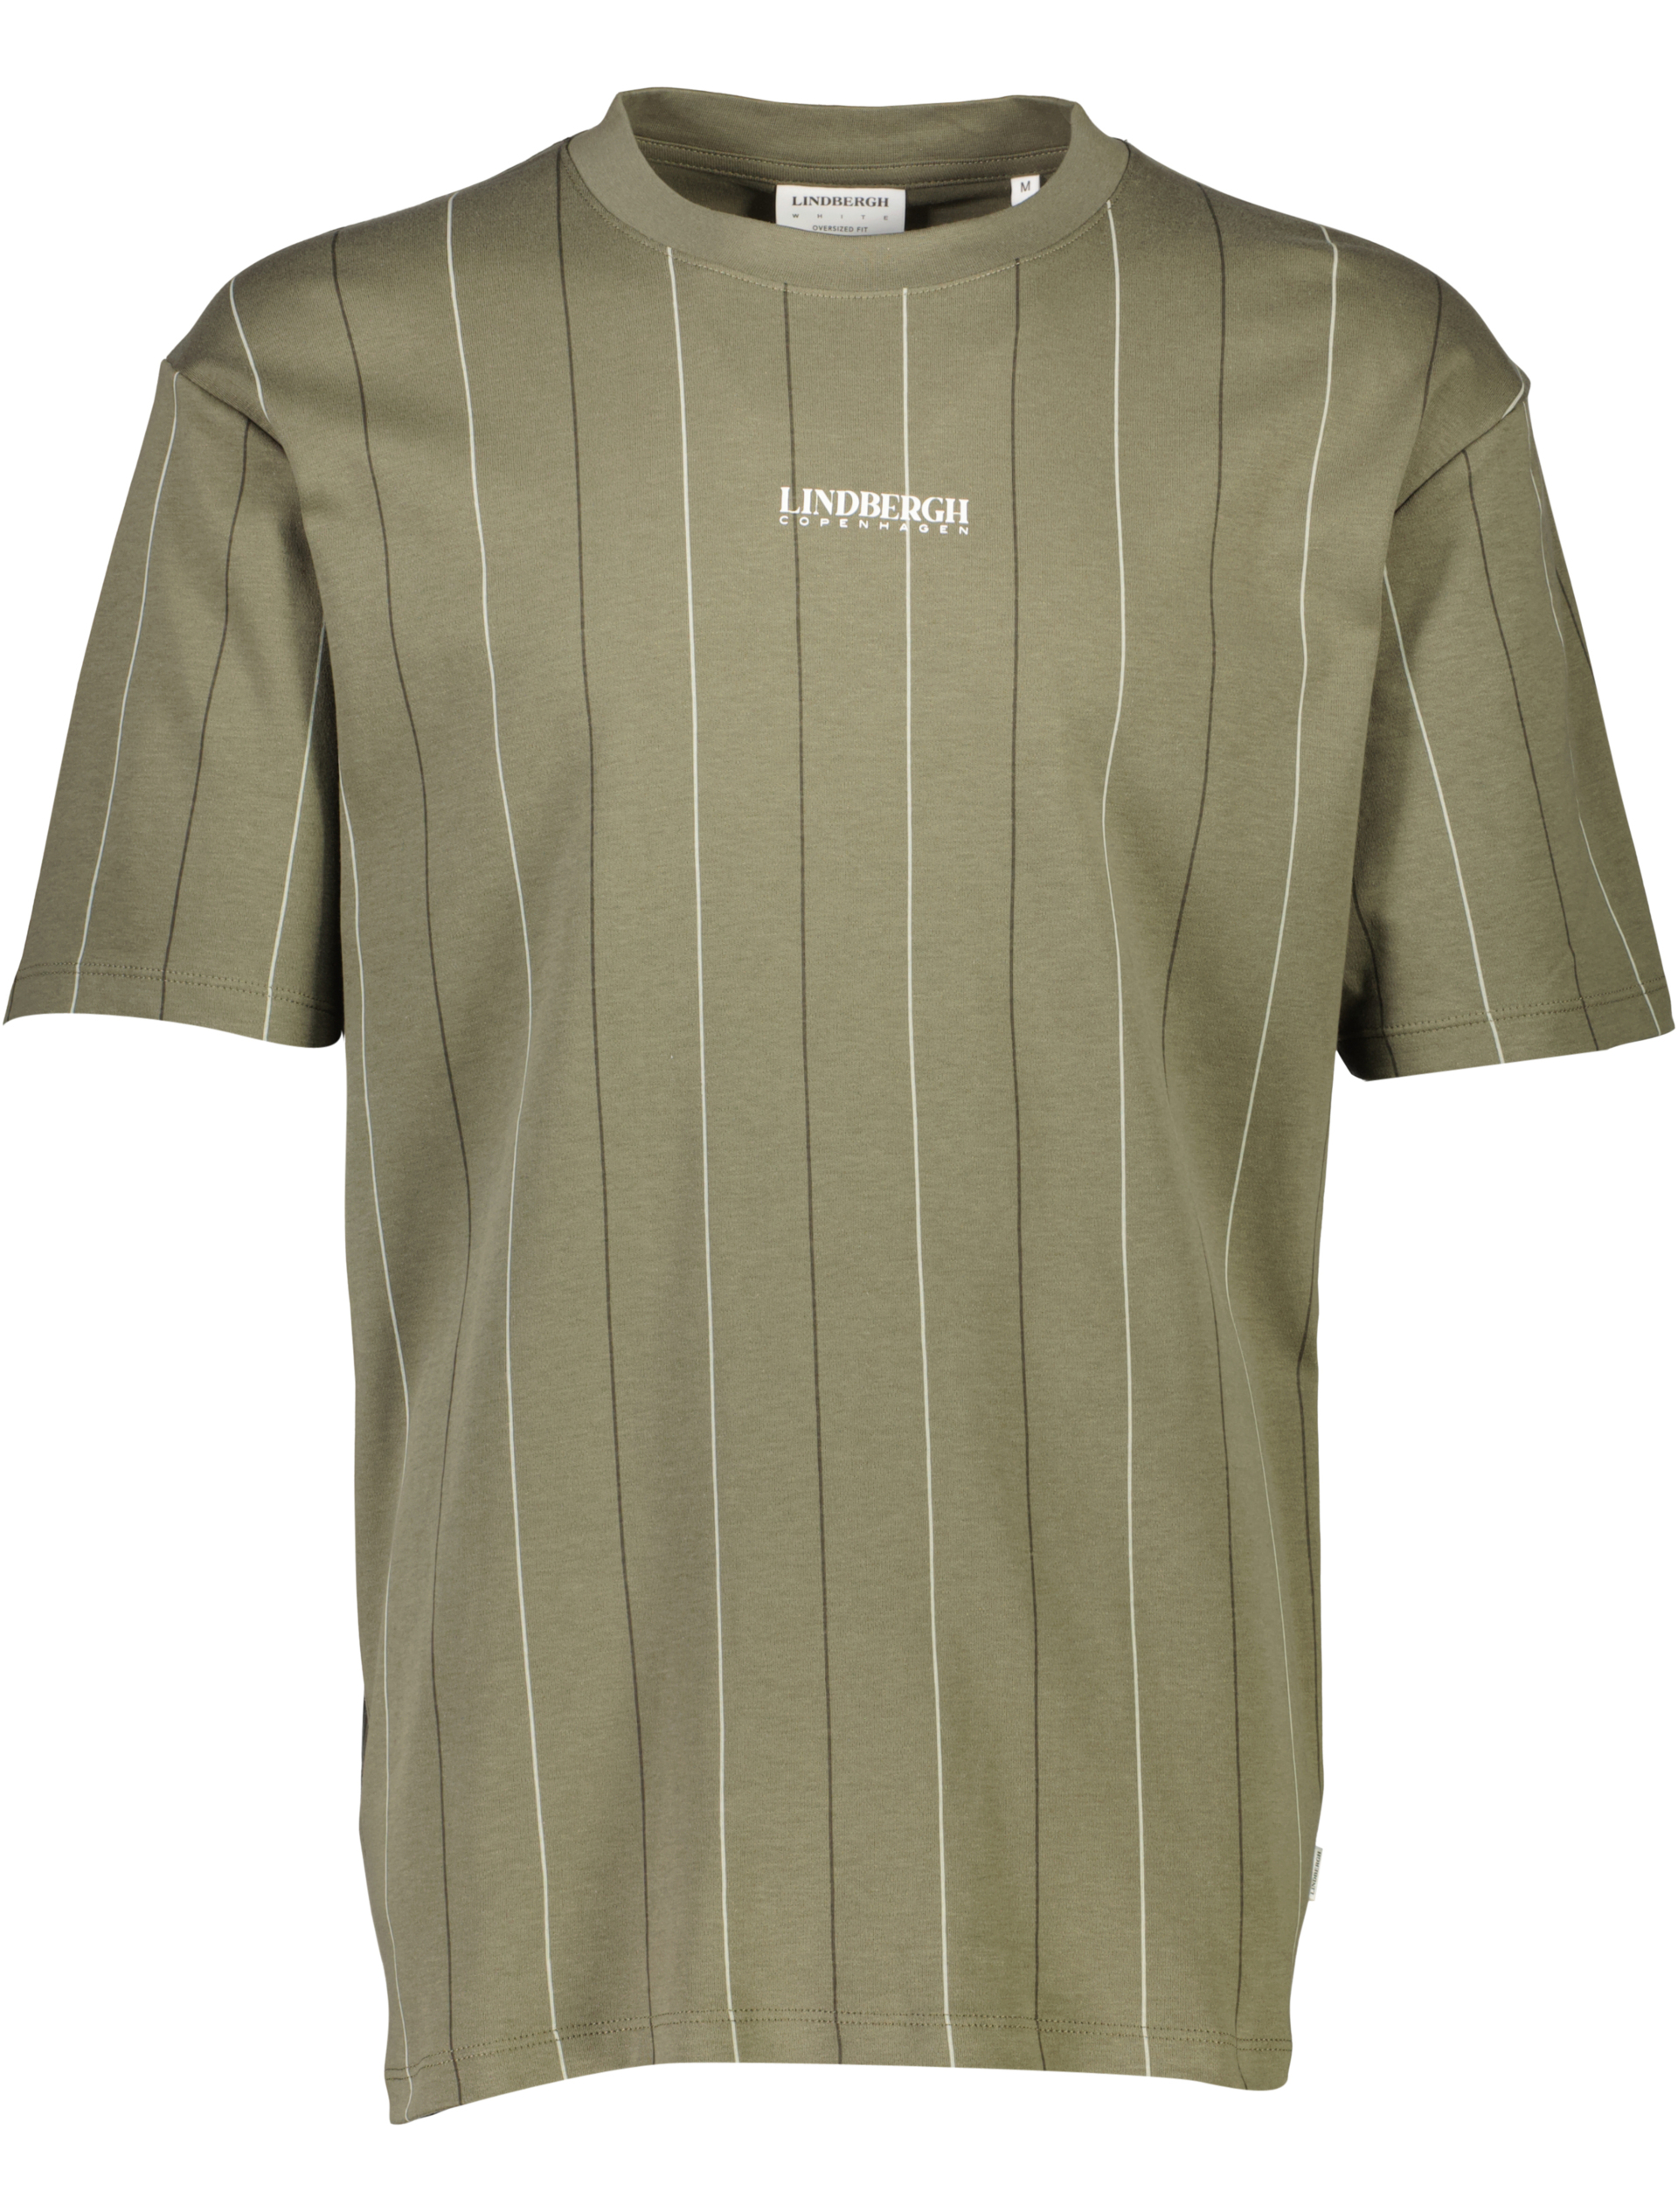 Lindbergh T-shirt grün / army